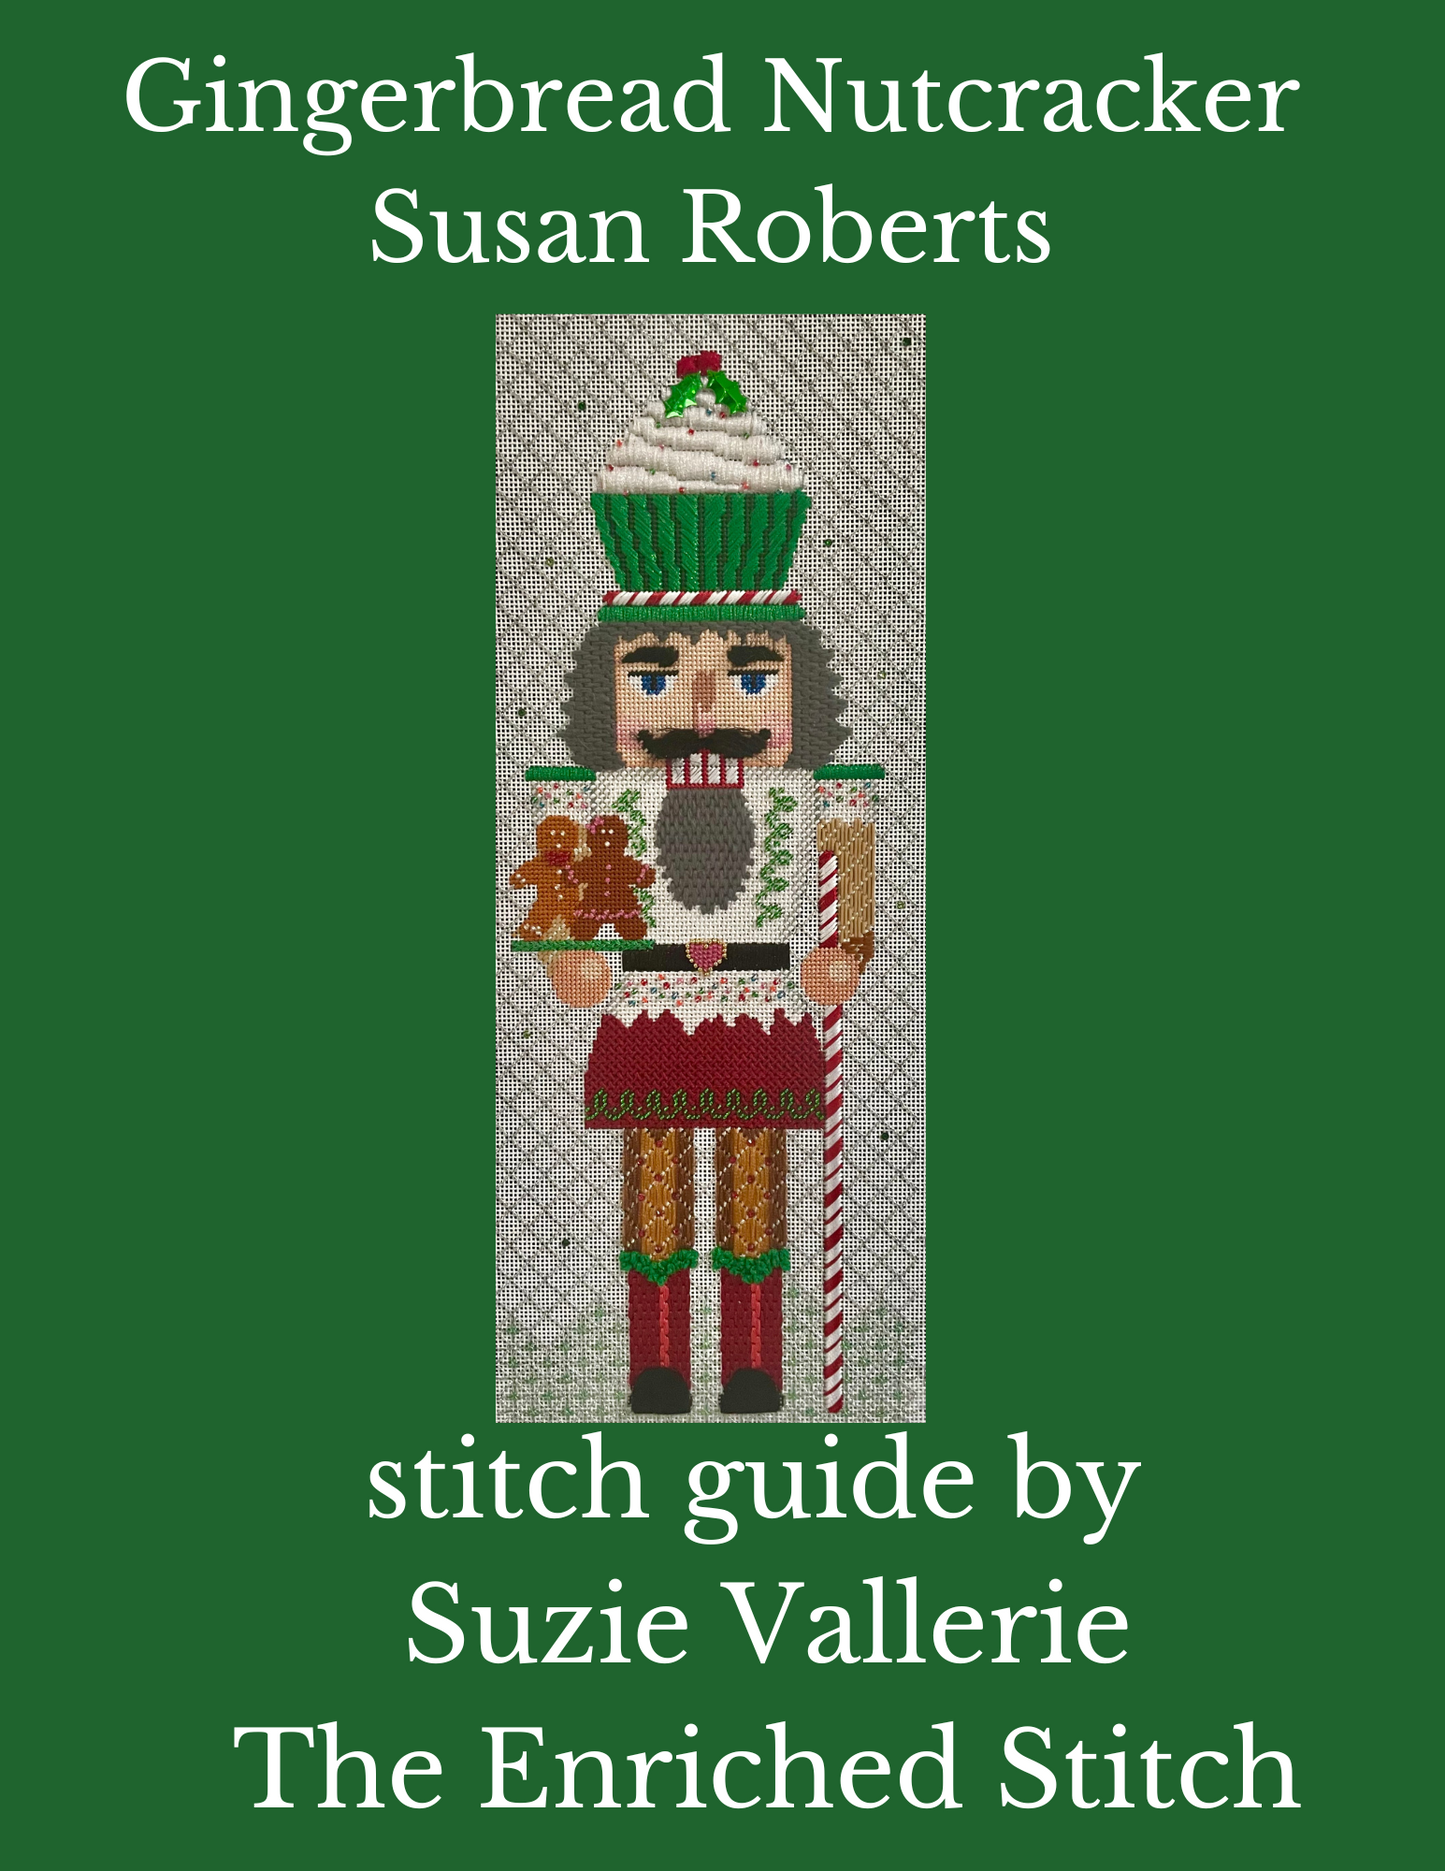 Gingerbread Nutcracker Stitch Guide